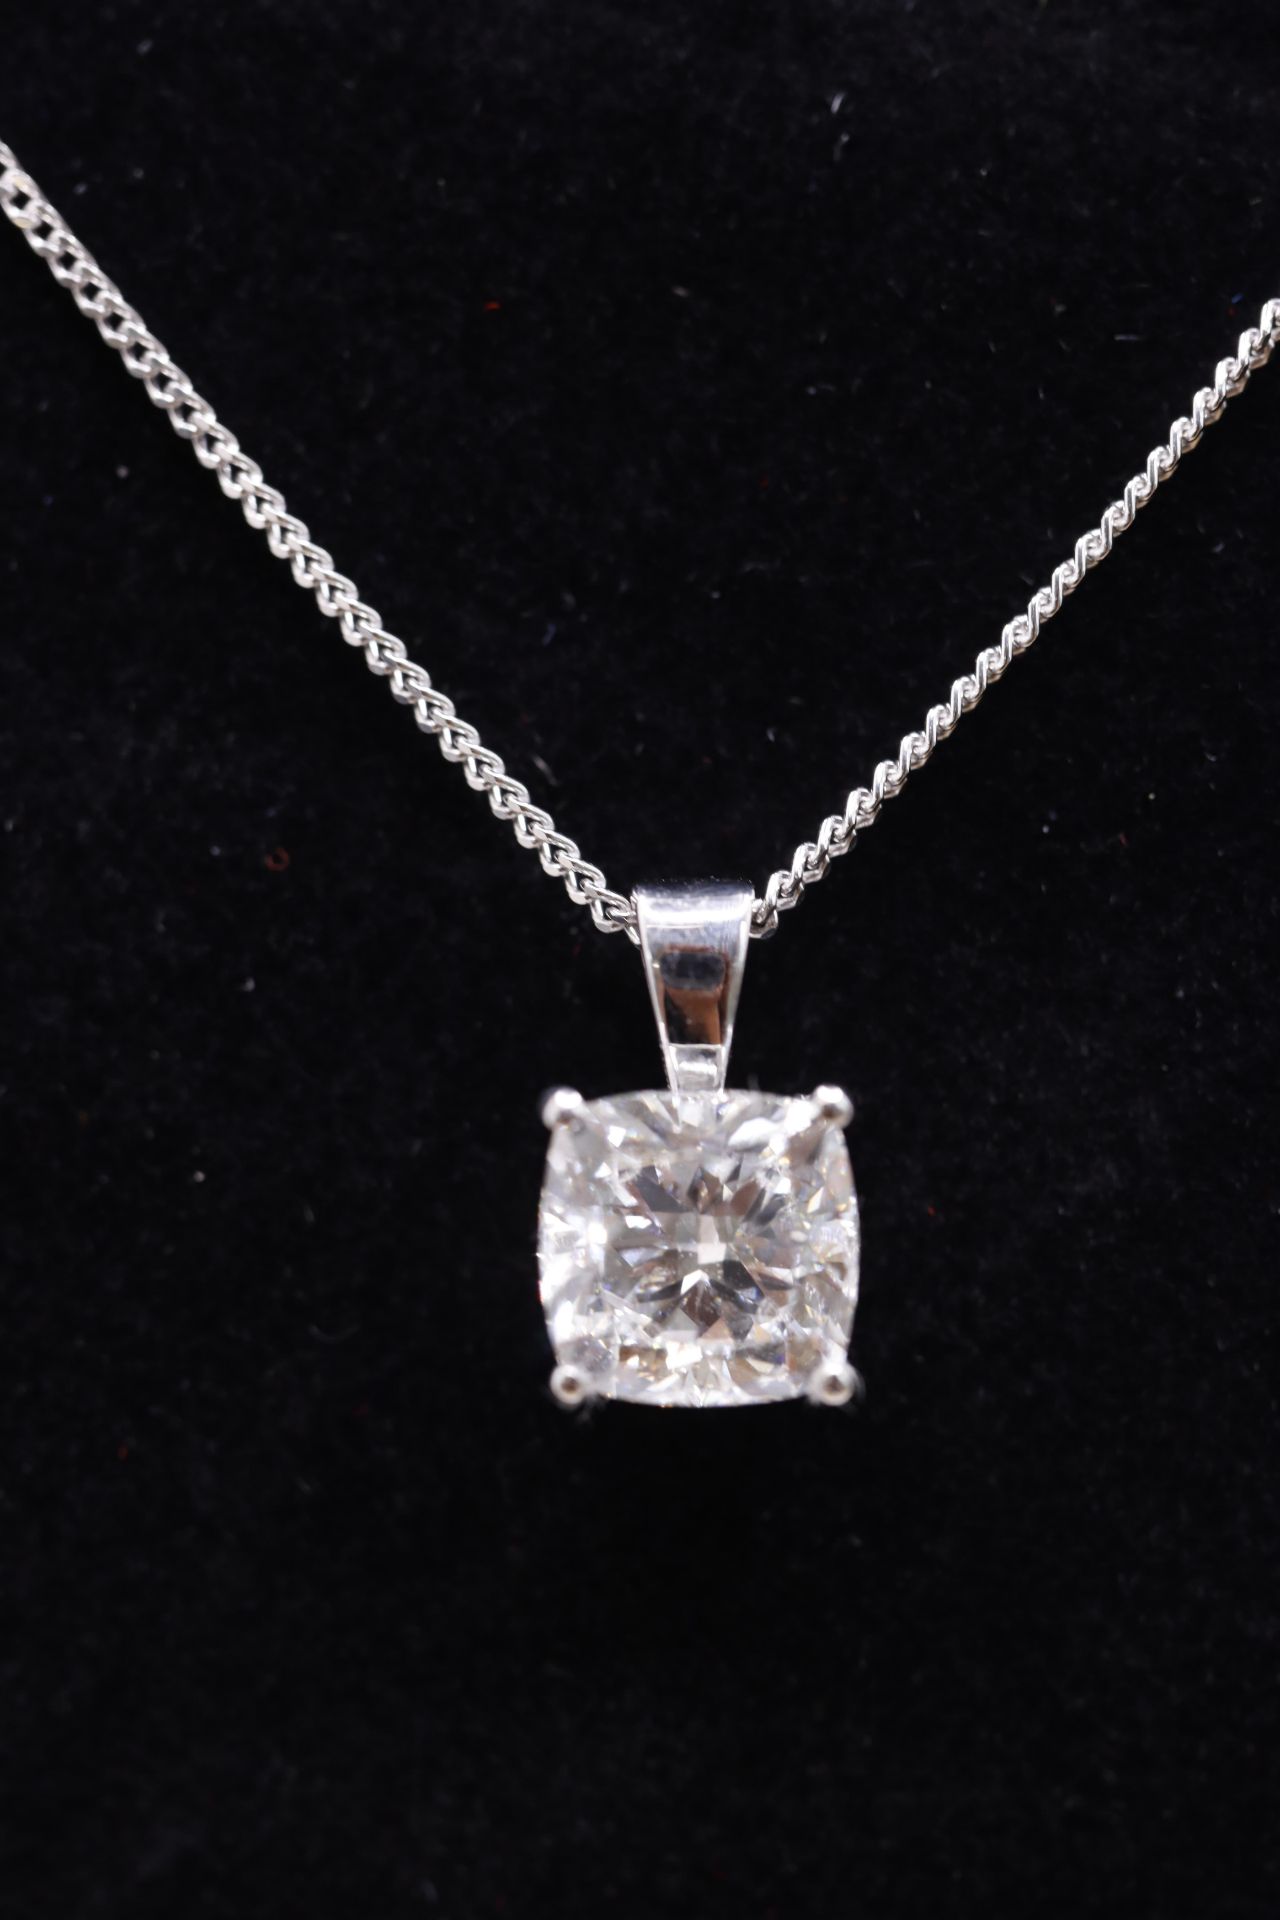 Cushion Cut Diamond 1.50 Carat D Colour VVS2 Clarity -Necklace Pendant -18kt White Gold -IGI - Image 2 of 3